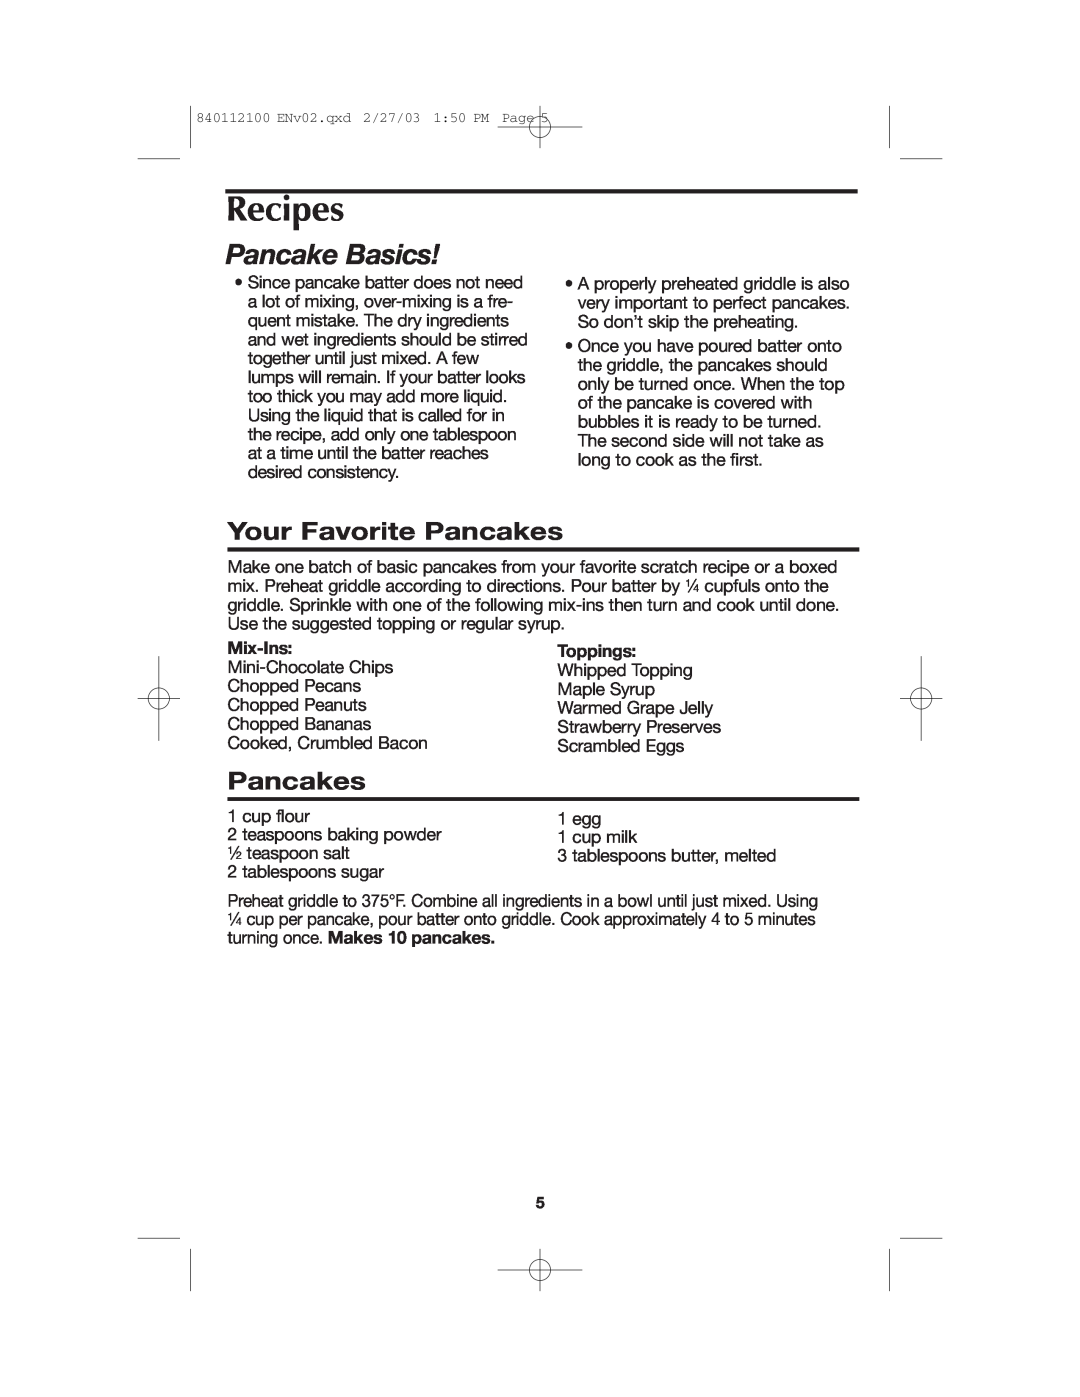 Proctor-Silex 840112100 manual Recipes, Pancake Basics, Your Favorite Pancakes, Mix-Ins, Toppings 